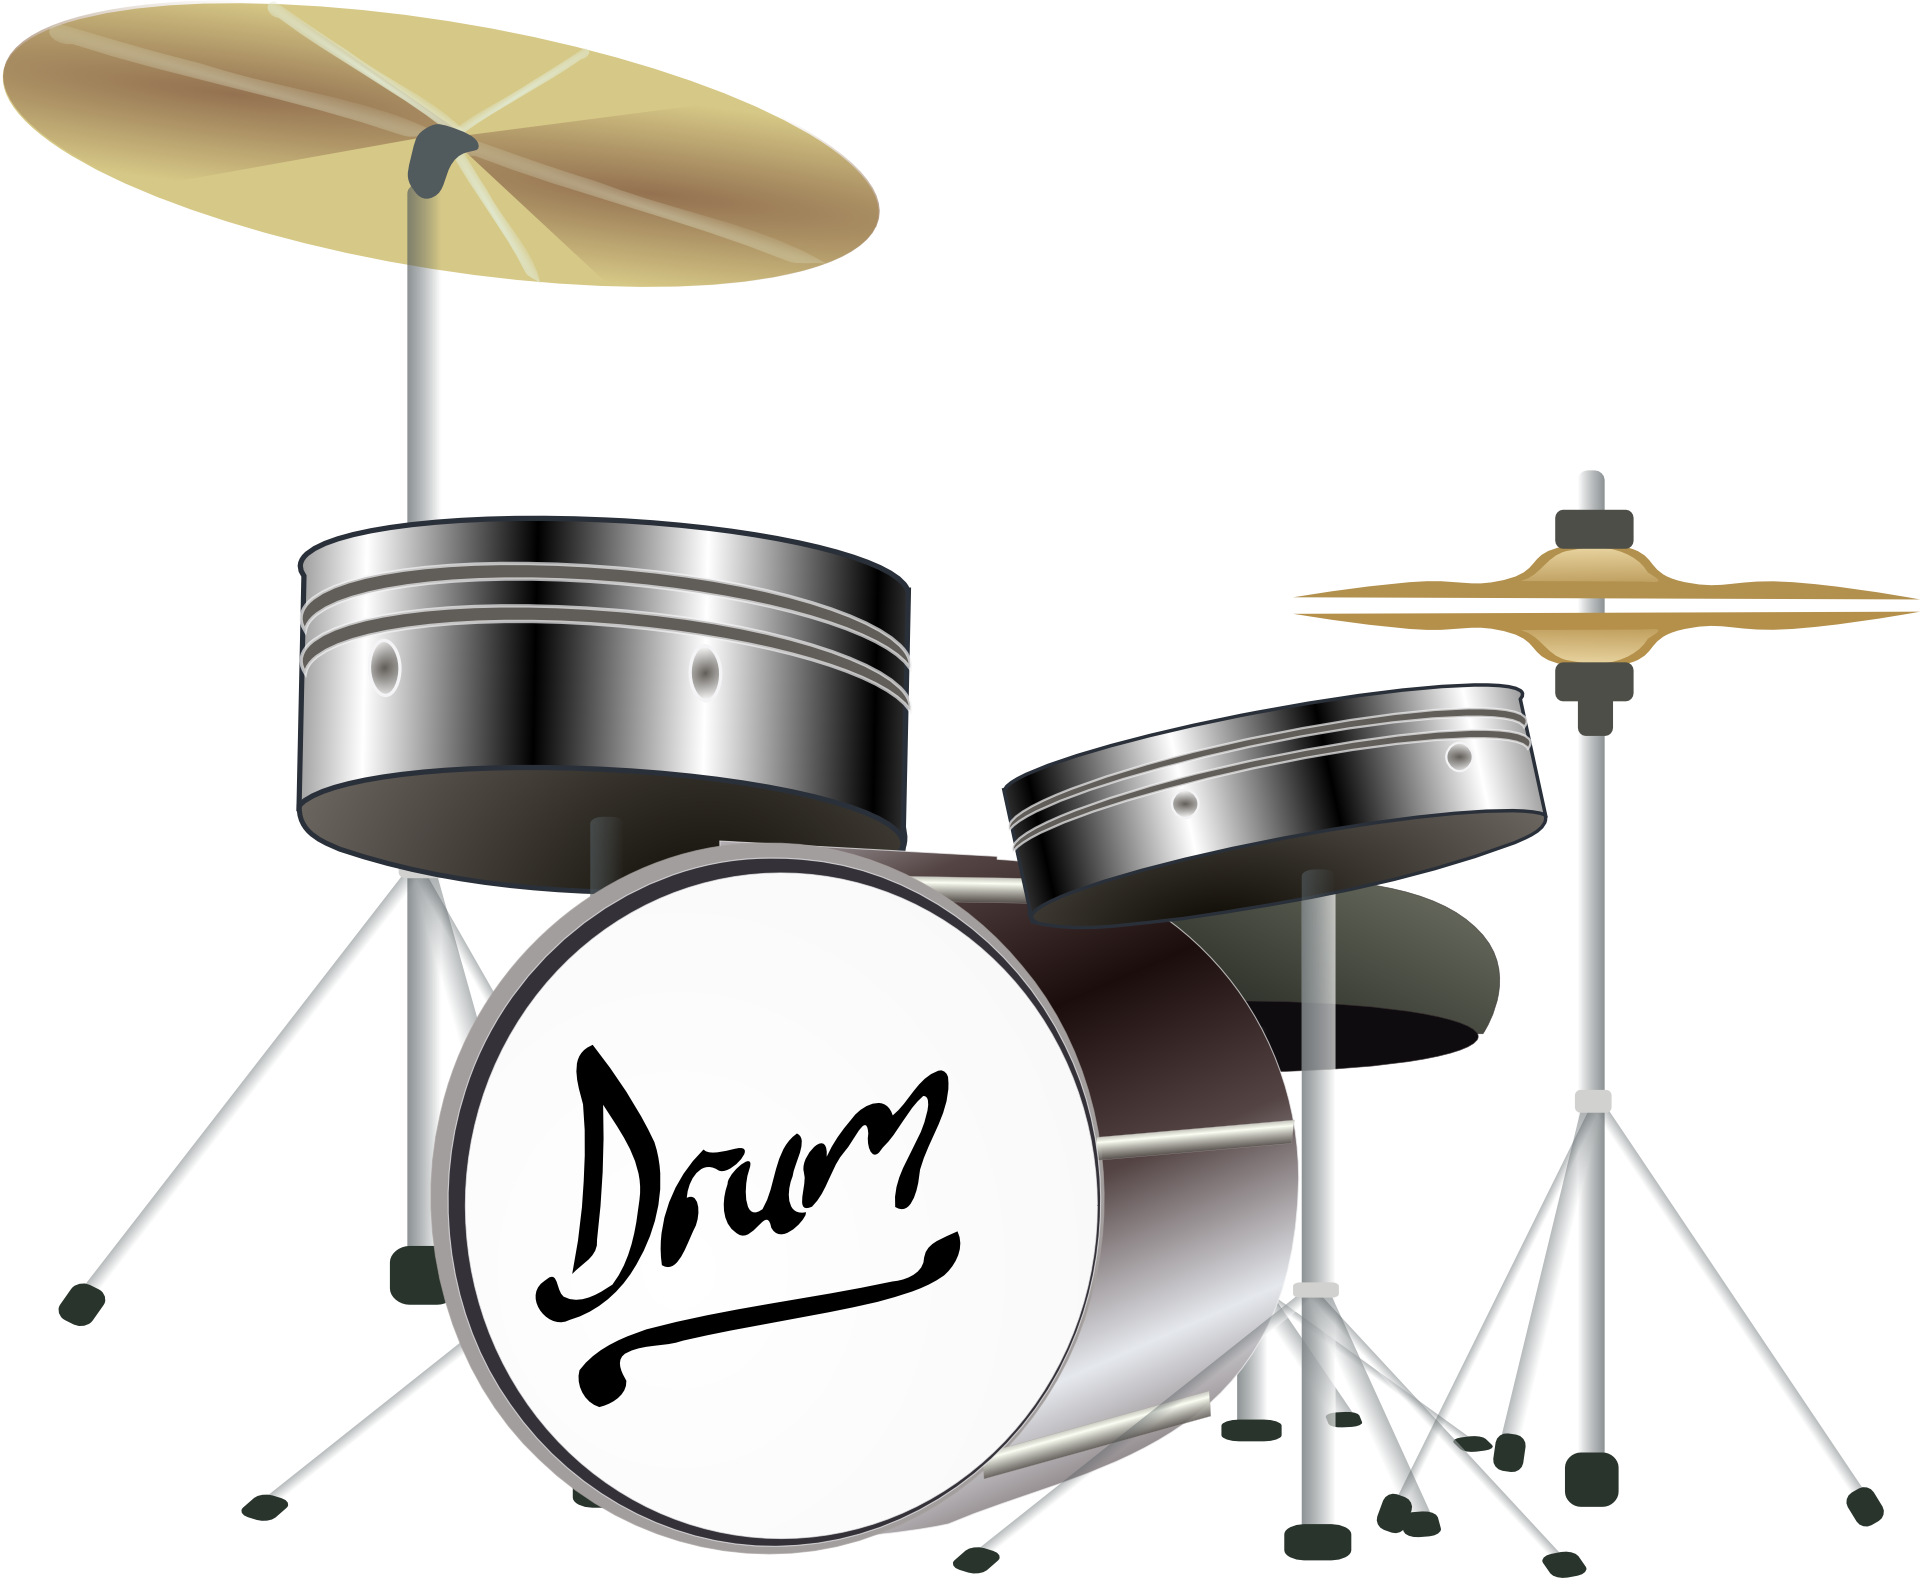 Drum set drawing free image download